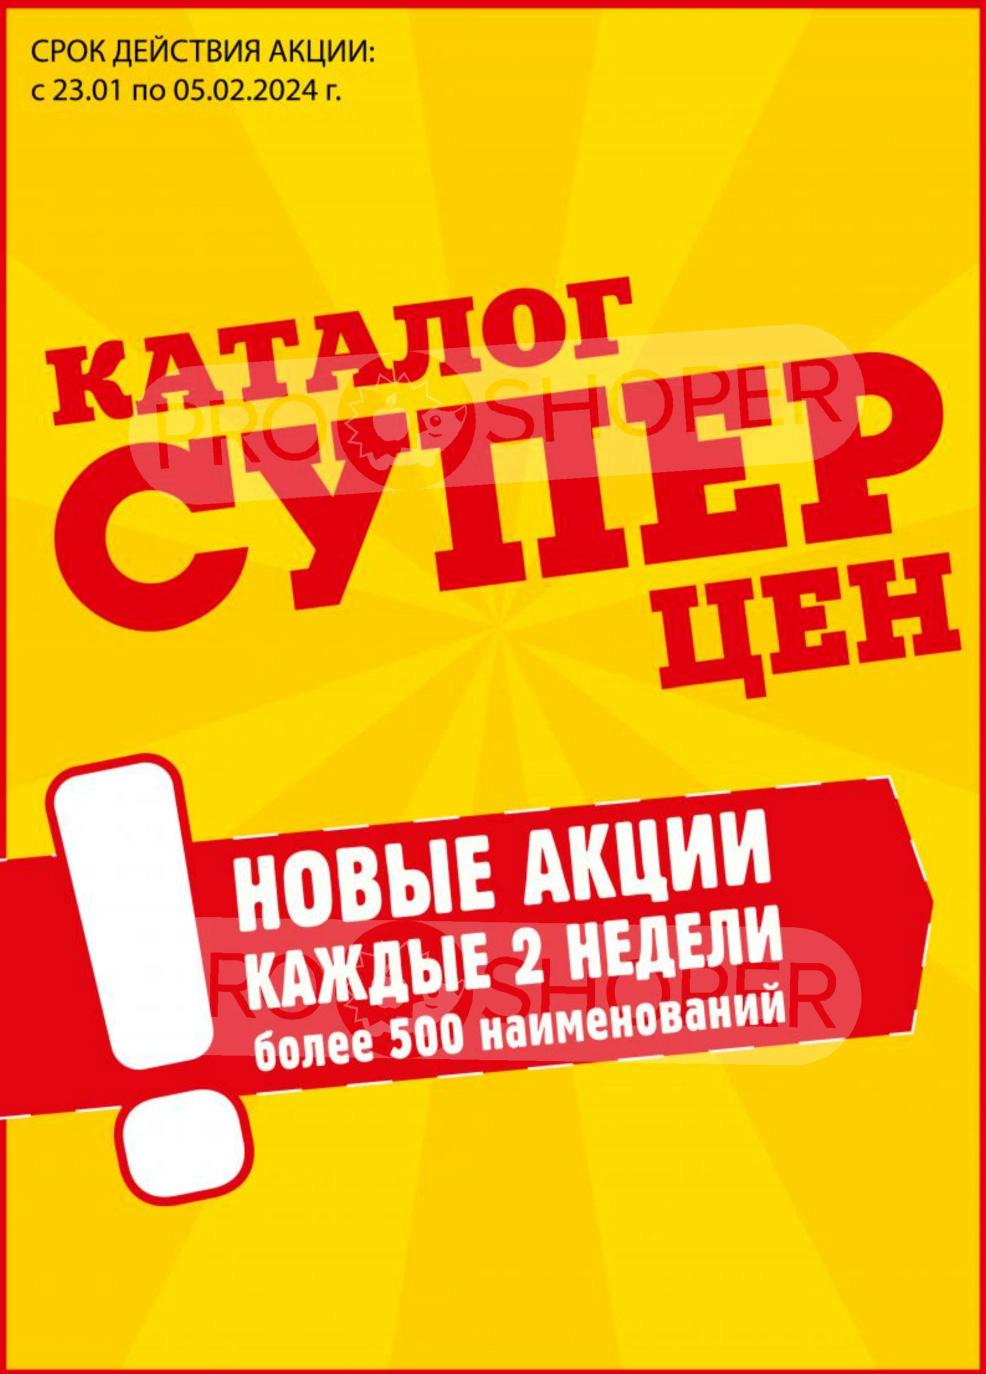 Логотип в меню заголовка